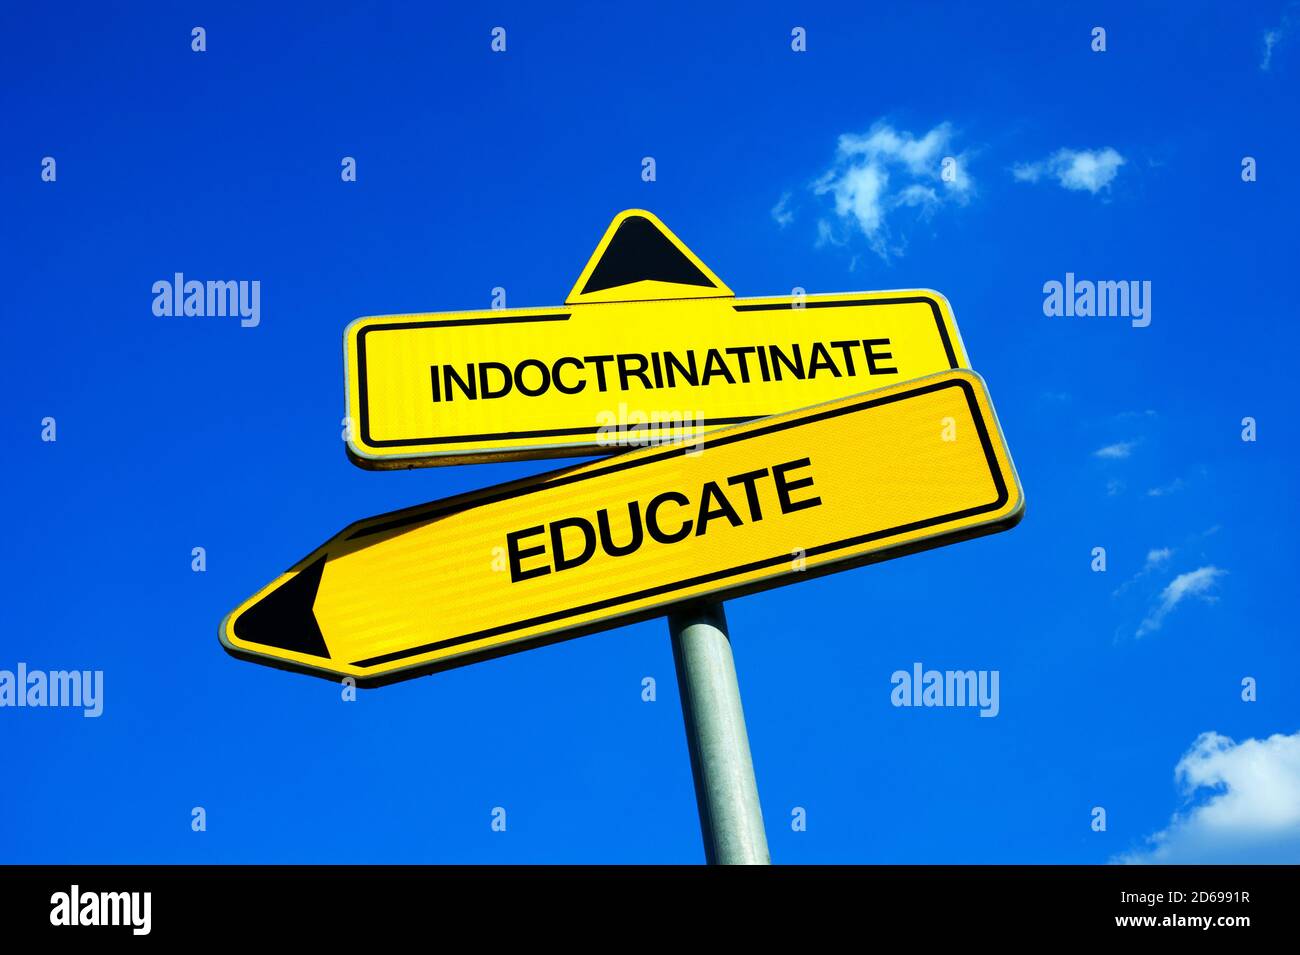 Indoktrinate vs Educate - Verkehrszeichen mit zwei Optionen - Lernen zu verstehen vs intellektuellen Einfluss und ideologische Gehirnwäsche. Doktrin vs. K Stockfoto